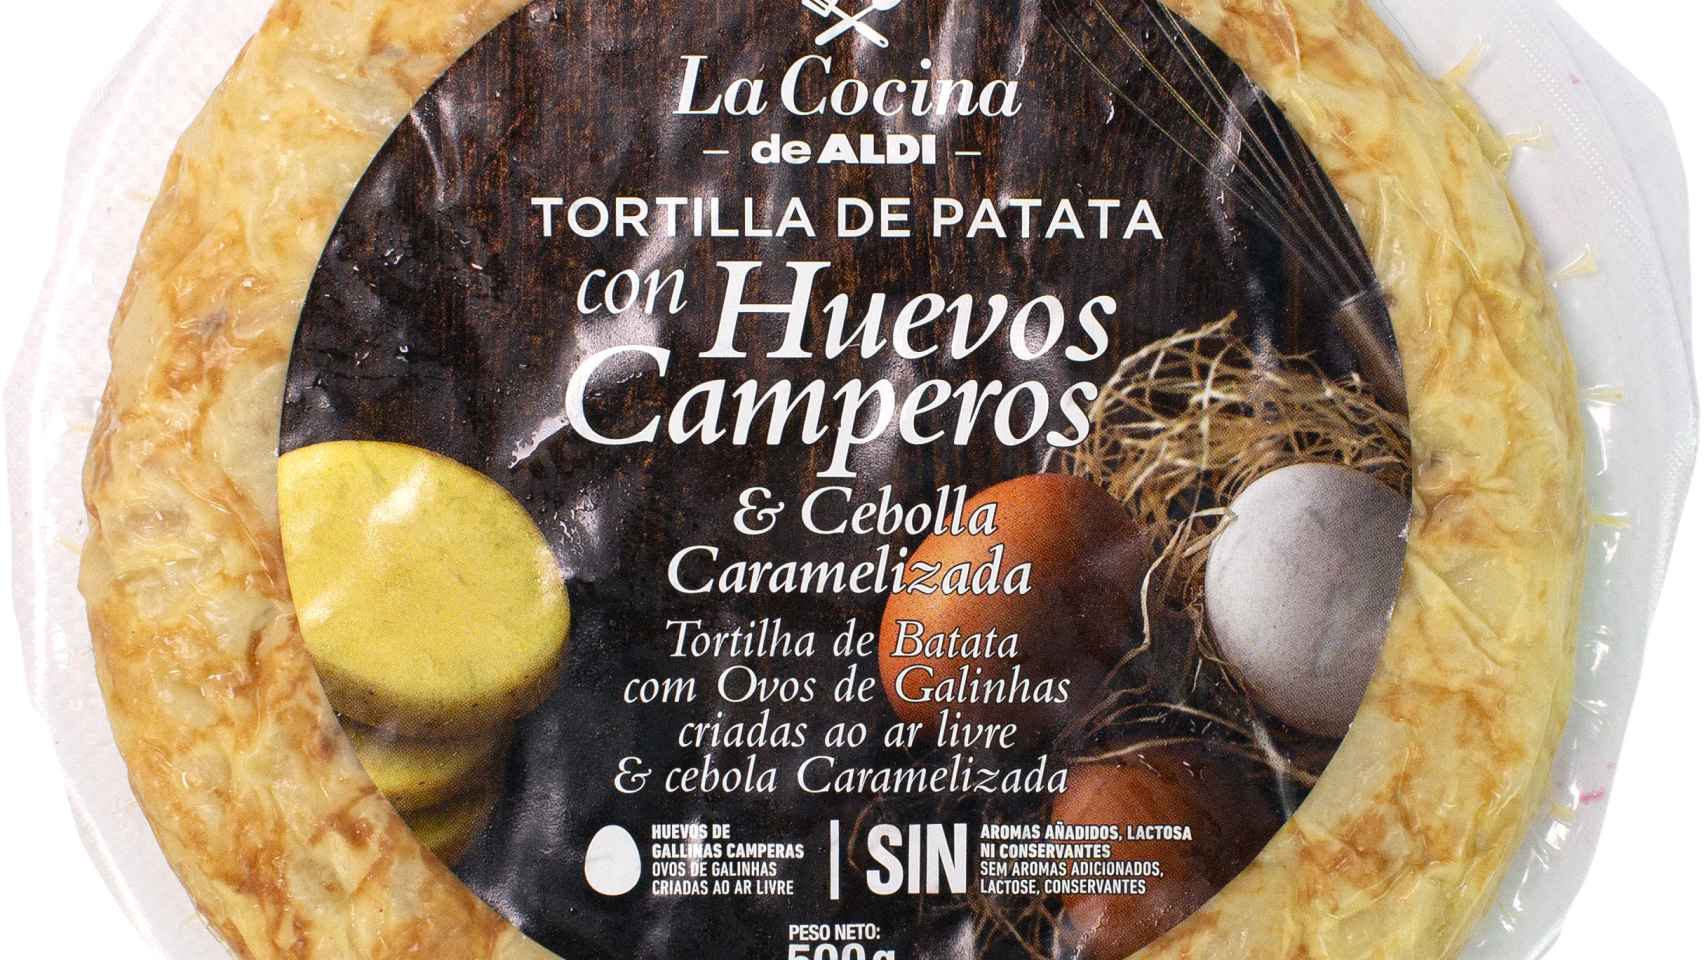 Tortillas-de-patata-LA-COCINA-DE-ALDI-TORTILLA-DE-PATATA-CON-HUEVOS-CAMPEROS-Y-CEBOLLA-CARAMELIZADA-zoom